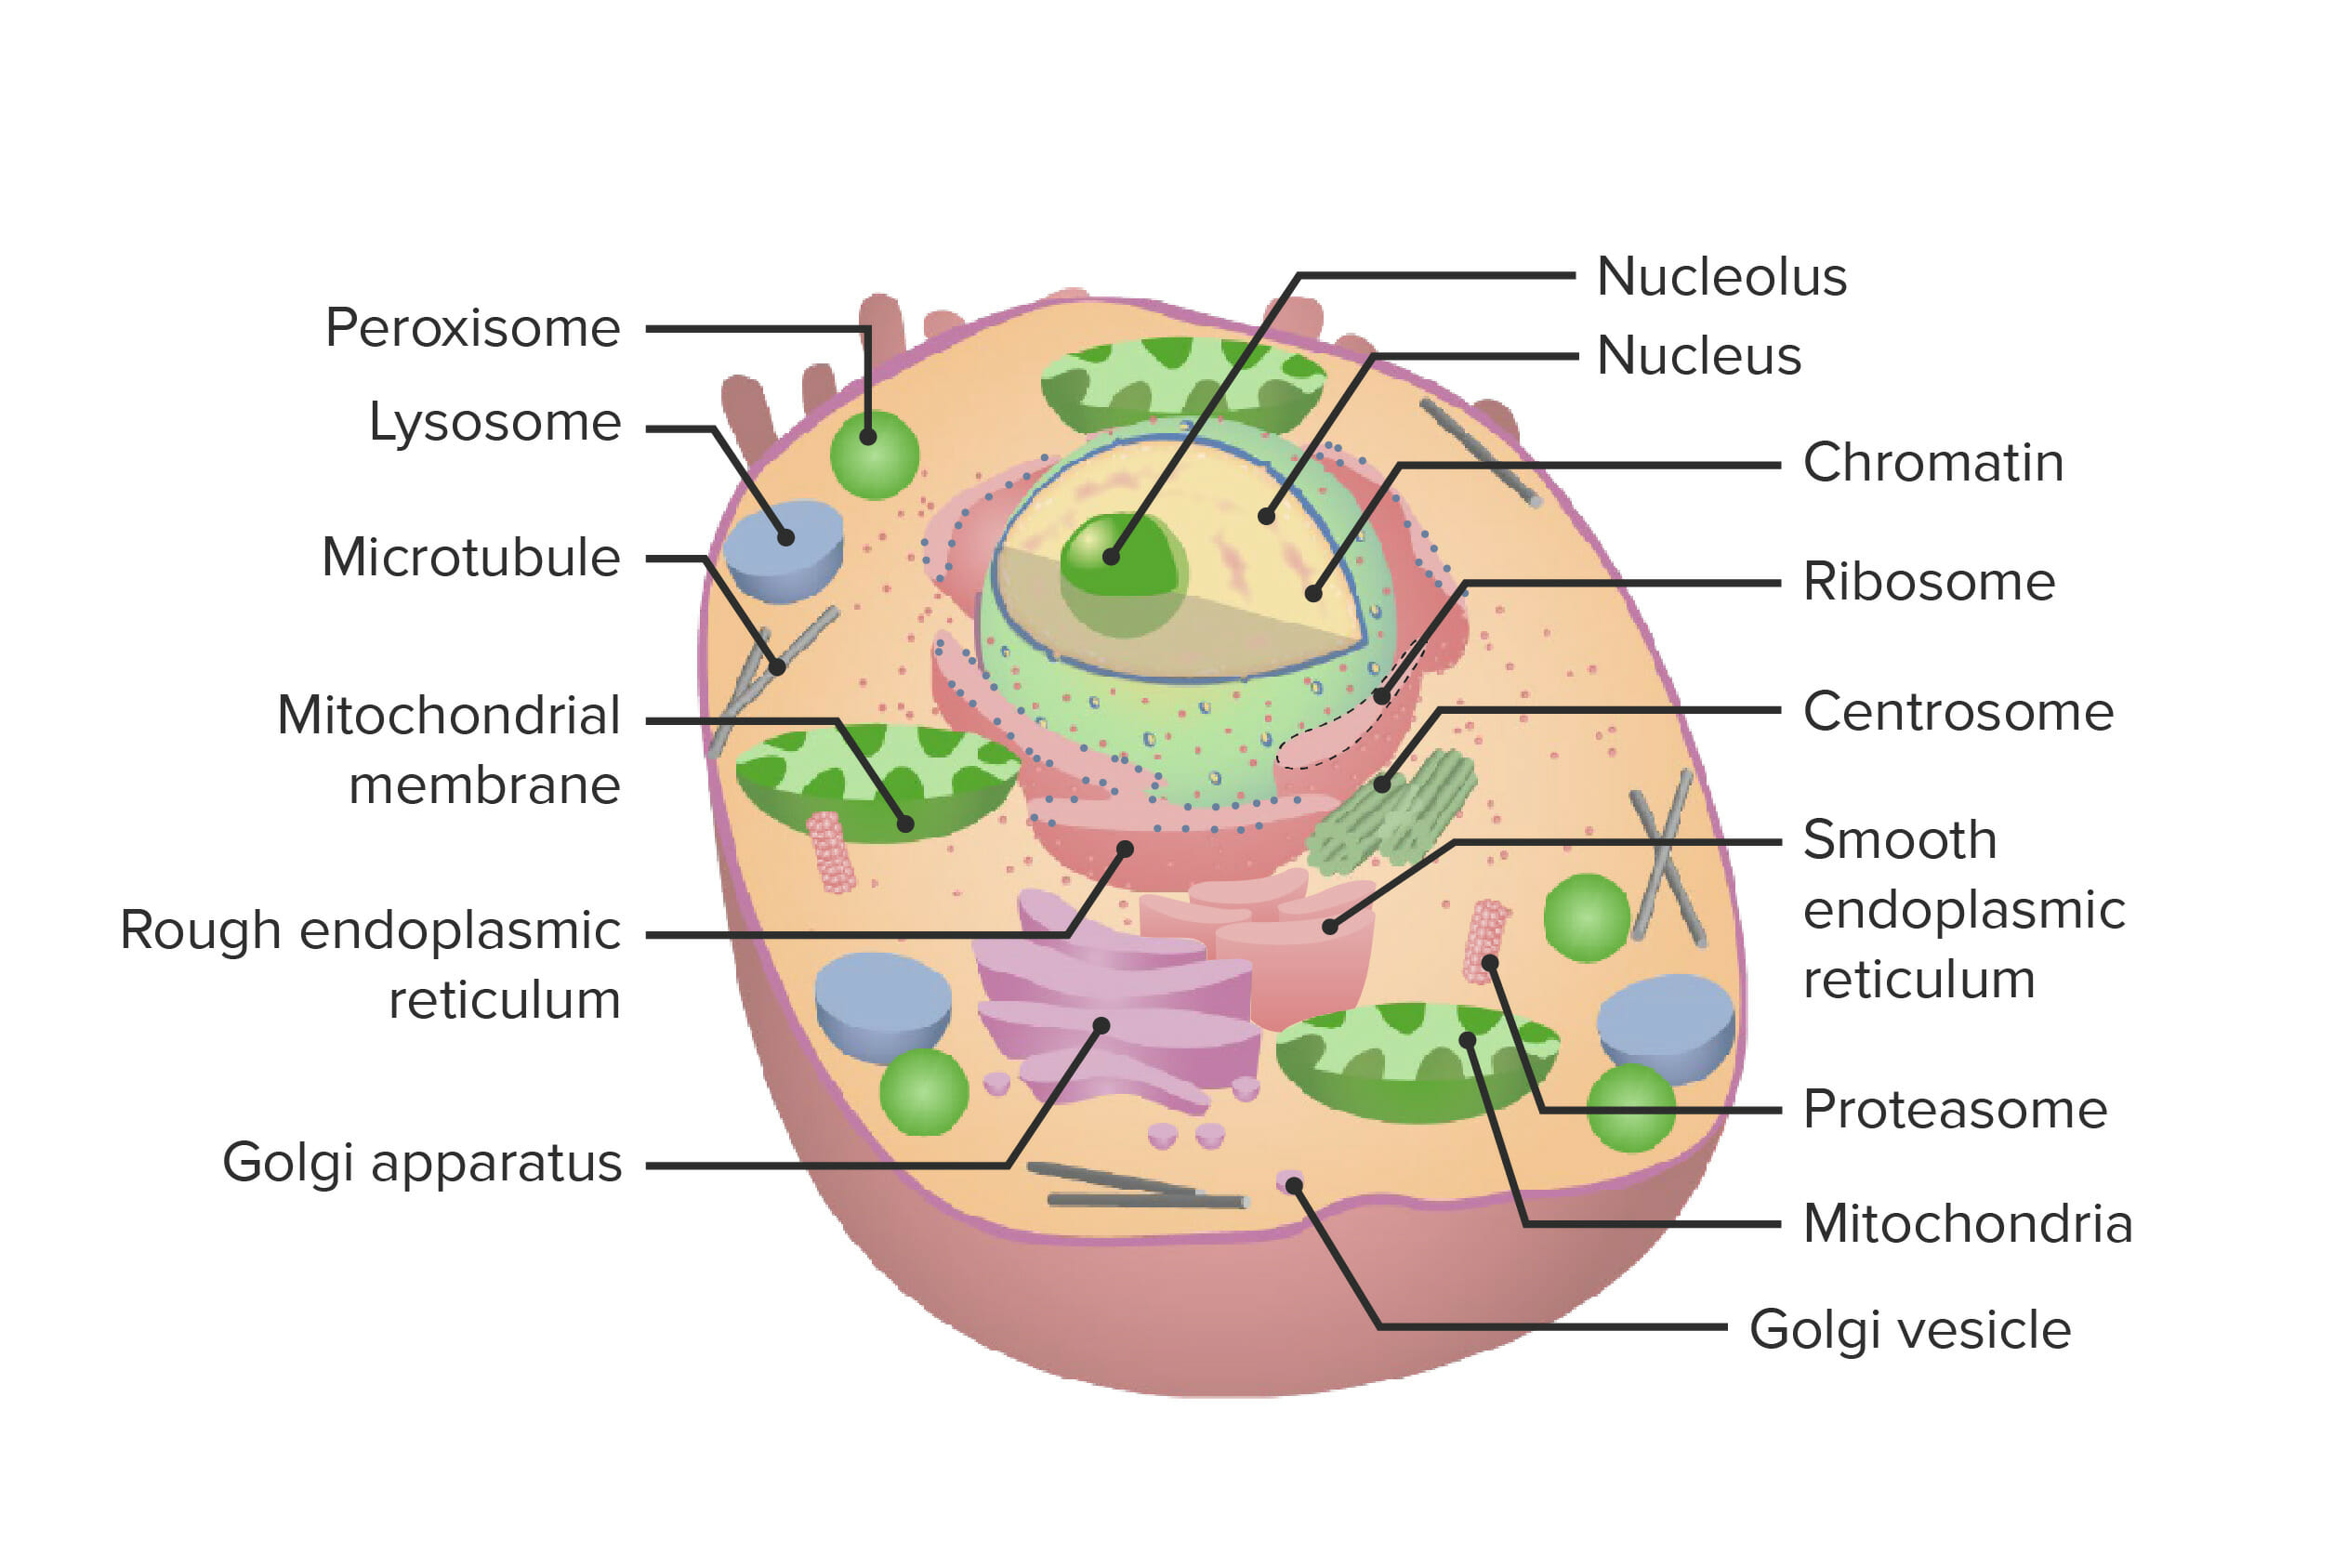 endoplasmic reticulum diagram in a cell